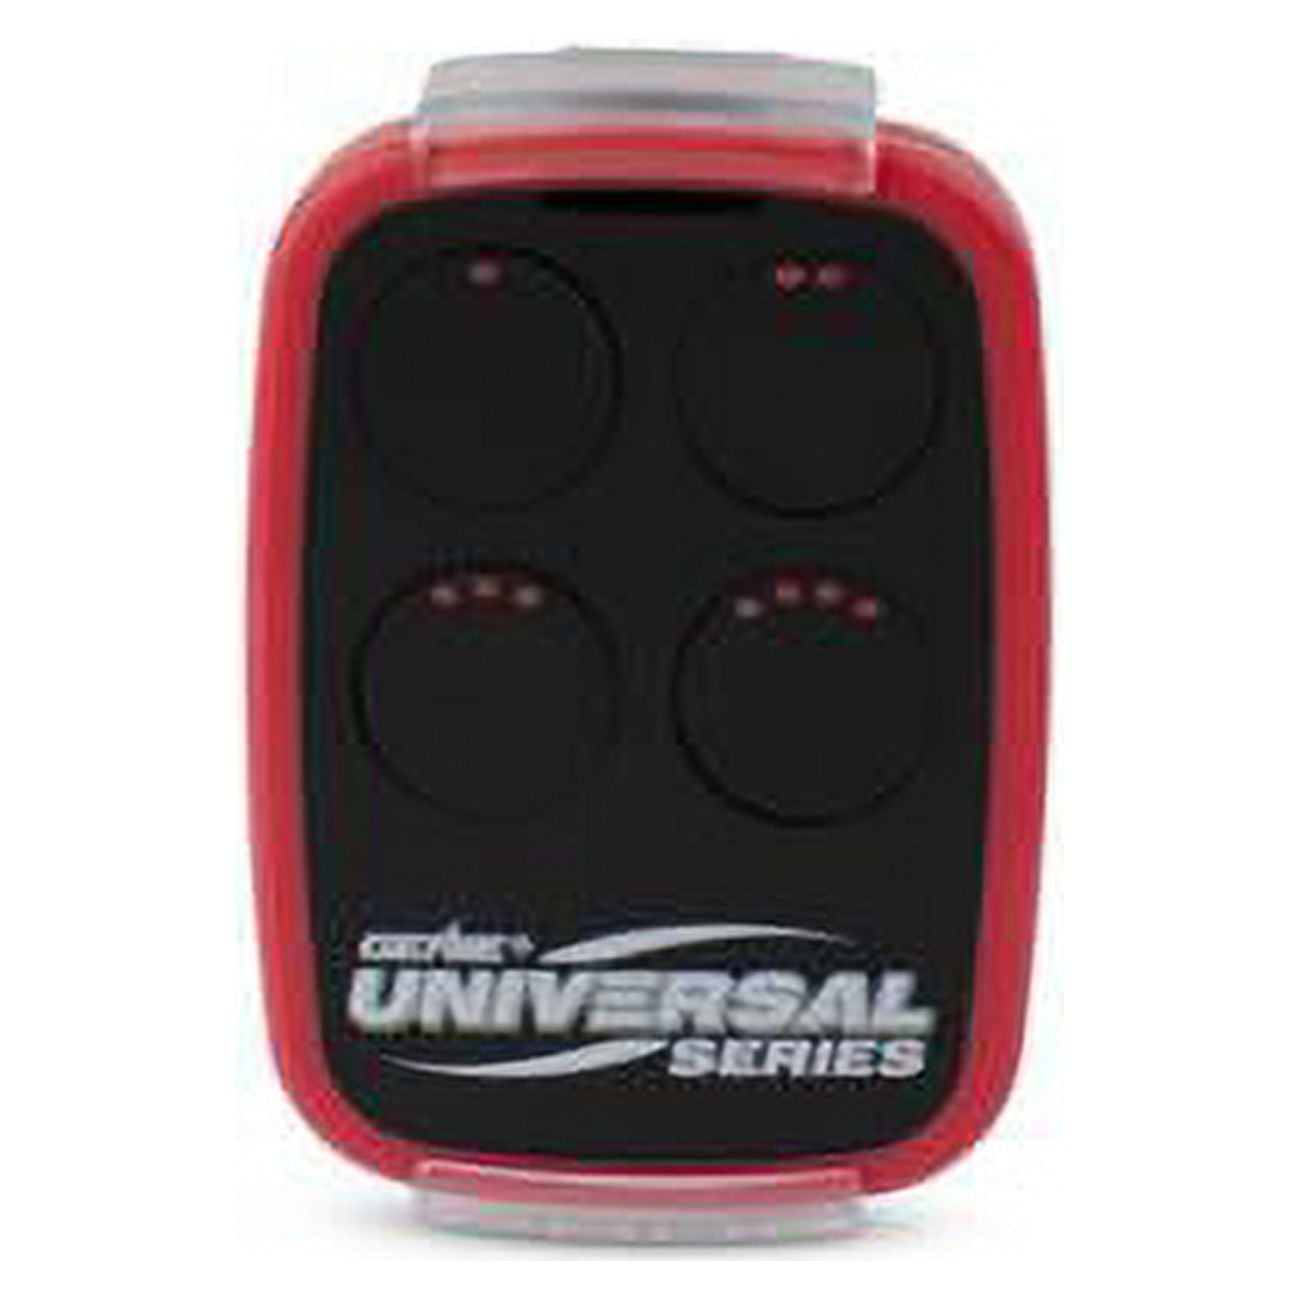 Picture of Genie 5018902 3 Door Universal Remote Control for All Major Garage Door Opener